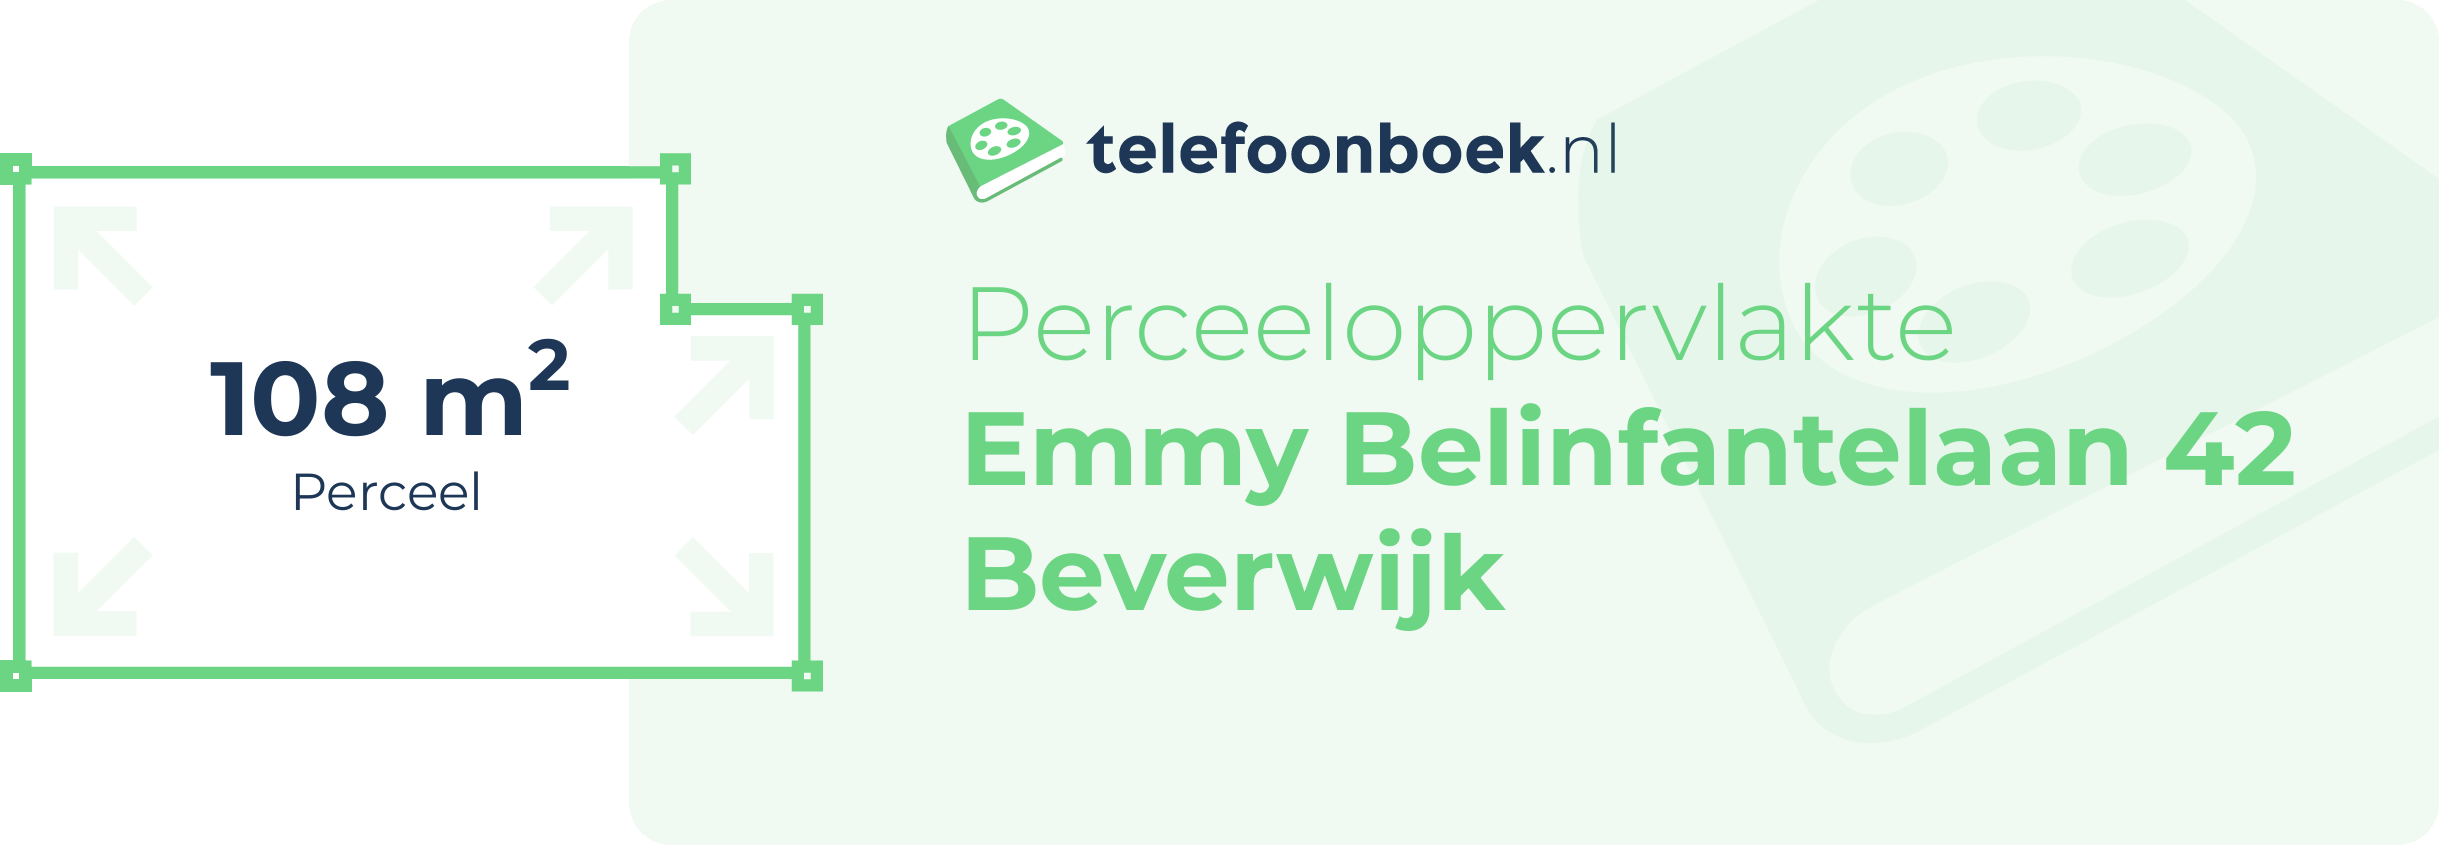 Perceeloppervlakte Emmy Belinfantelaan 42 Beverwijk